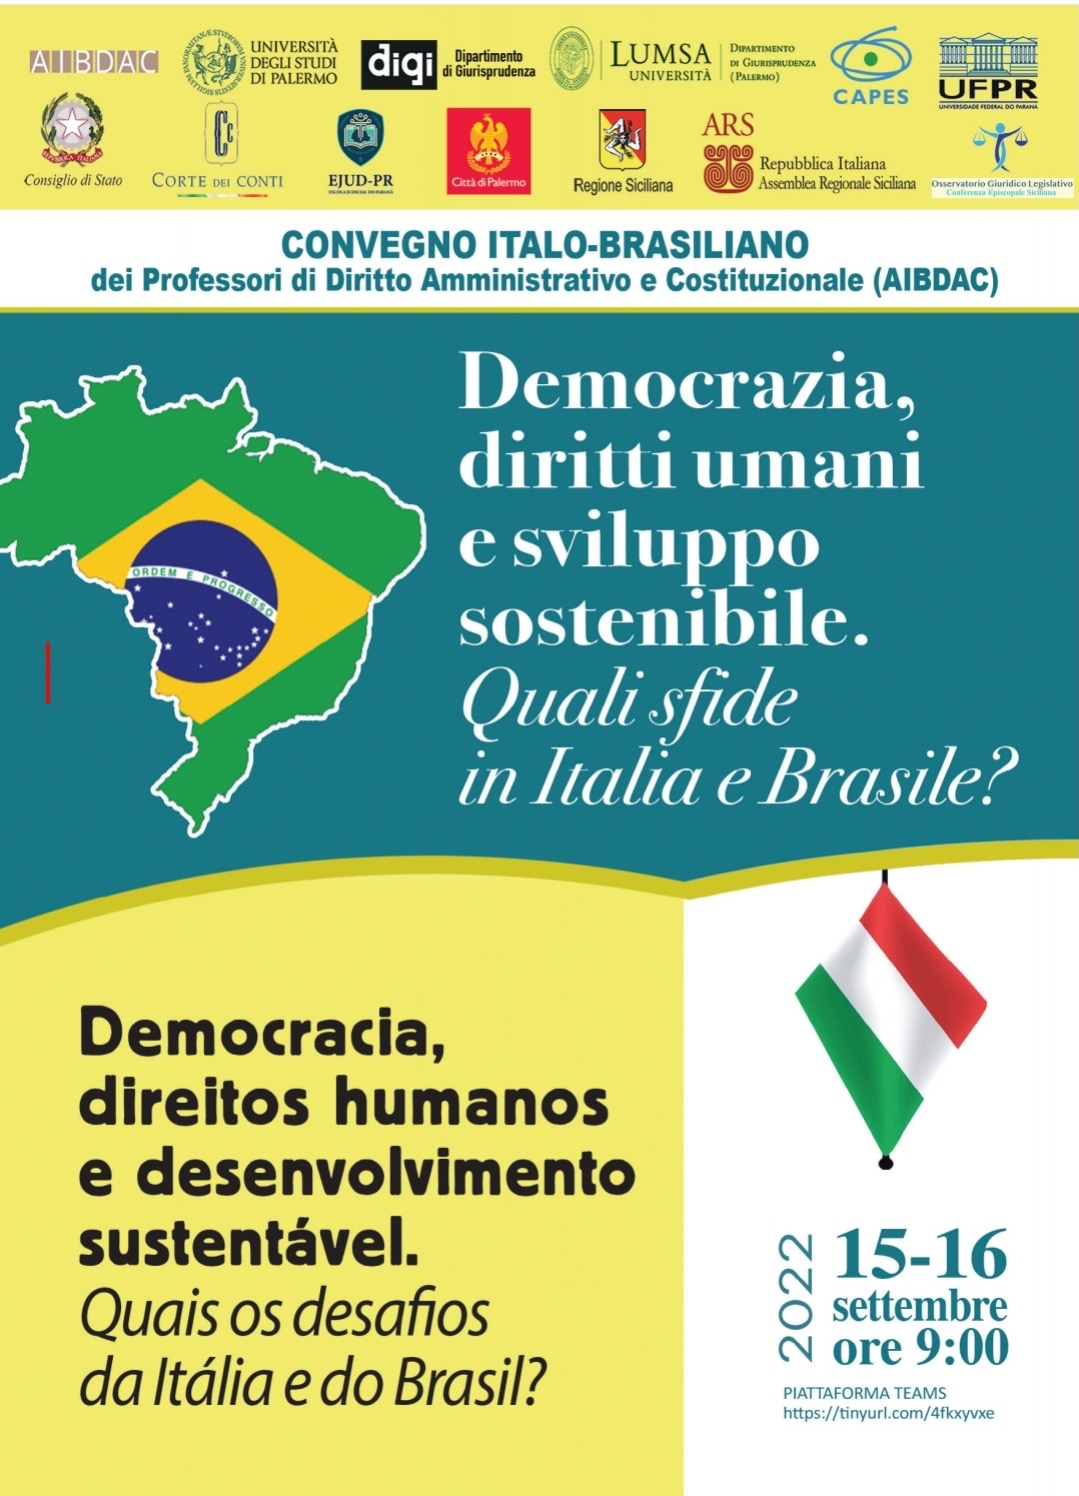 “DEMOCRAZIA, DIRITTI UMANI E SVILUPPO SOSTENIBILE” SULL’ASSE ITALIA – BRASILE